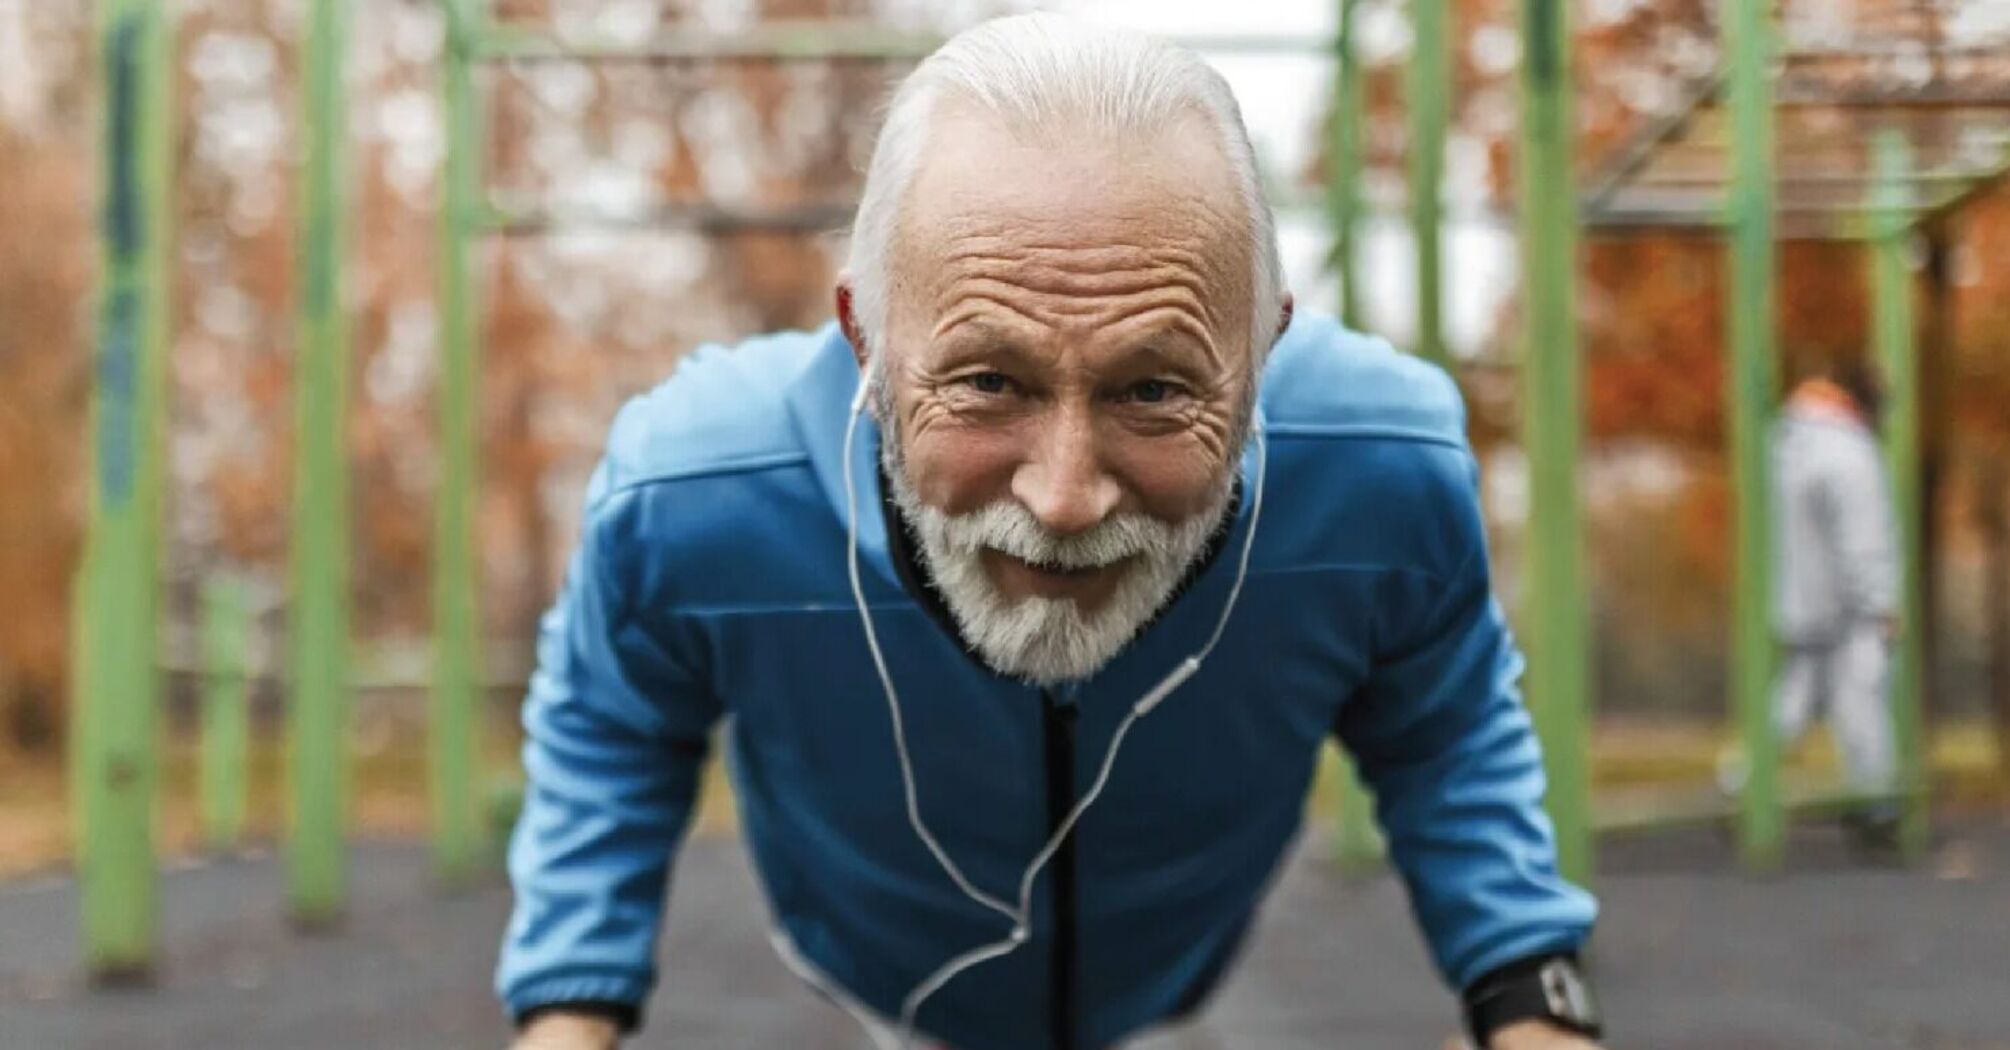 Физическая активность в старшем возрасте имеет решающее значение